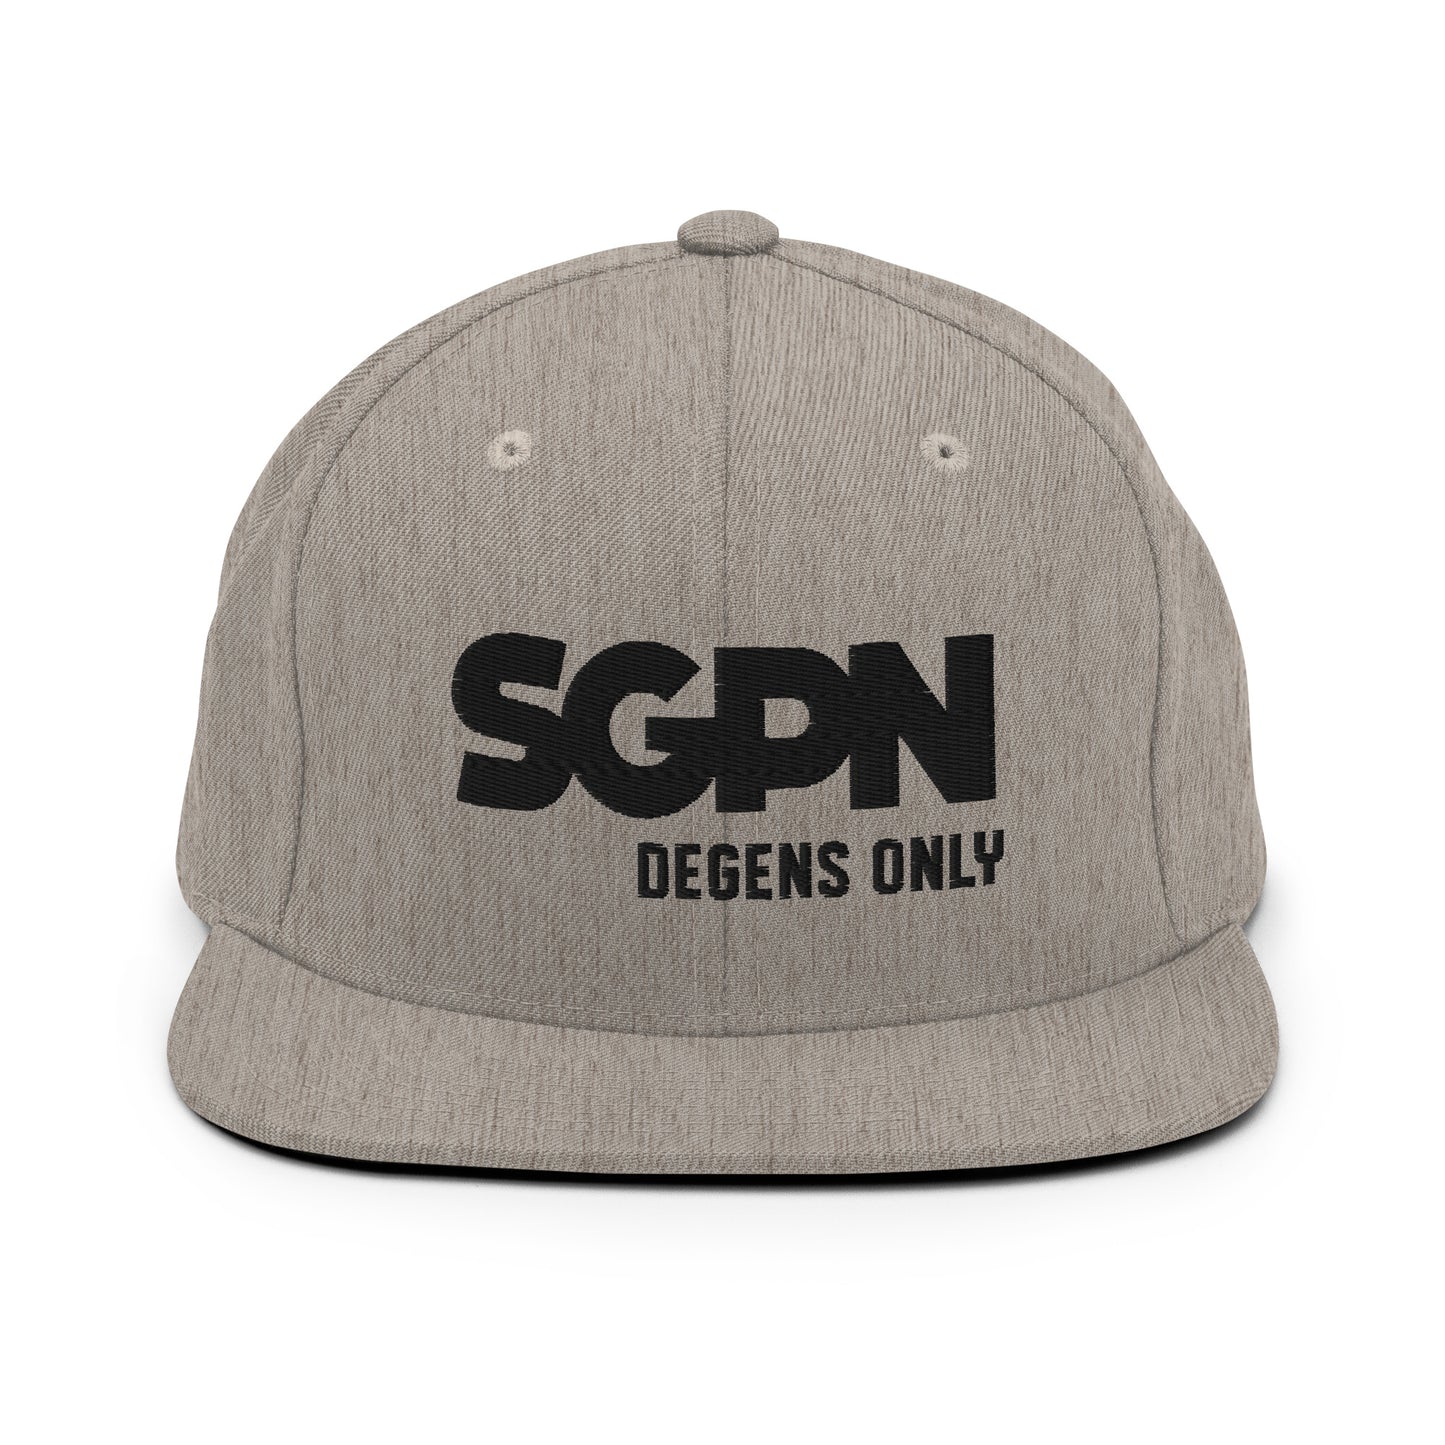 SGPN - Degens Only edition - Snapback Hat (Black Logo)